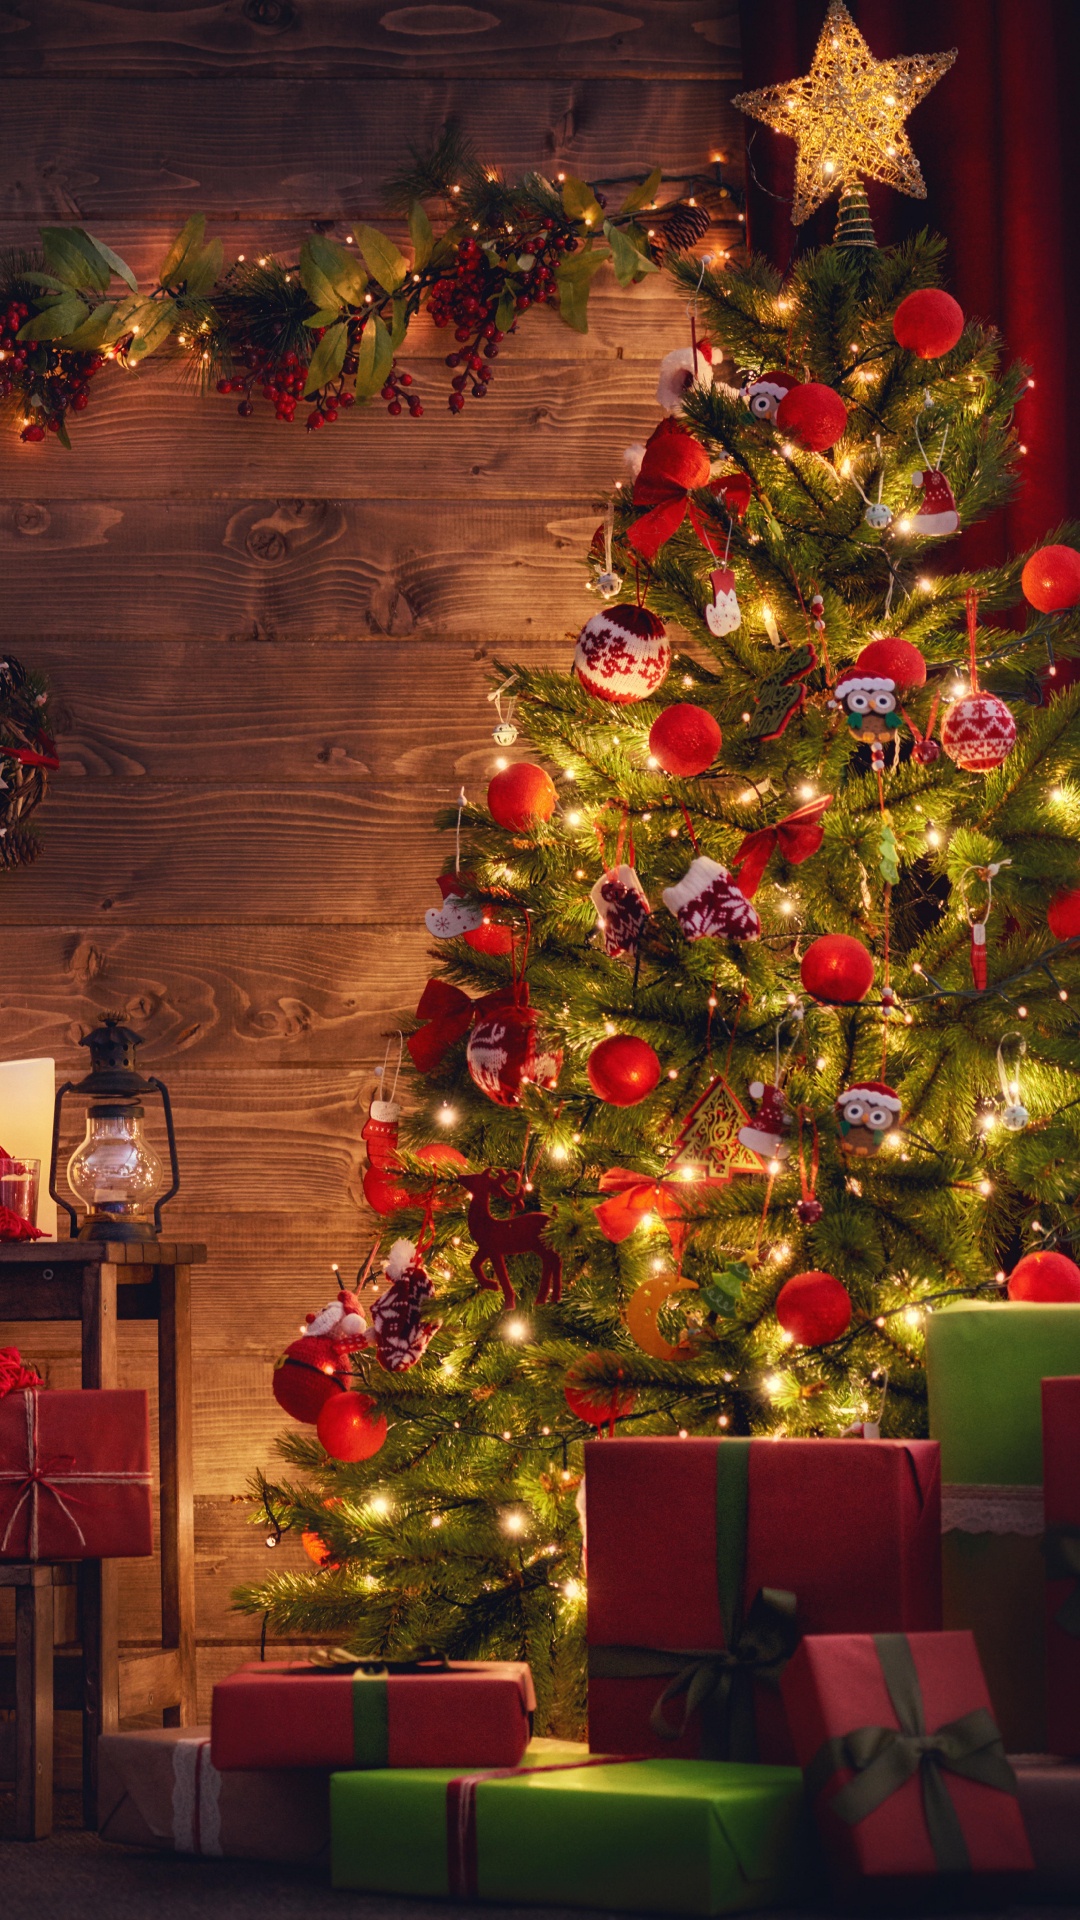 El Día De Navidad, Decoración de la Navidad, Navidad, Luces de Navidad, Calendario de Adviento de Navidad de Madera. Wallpaper in 1080x1920 Resolution